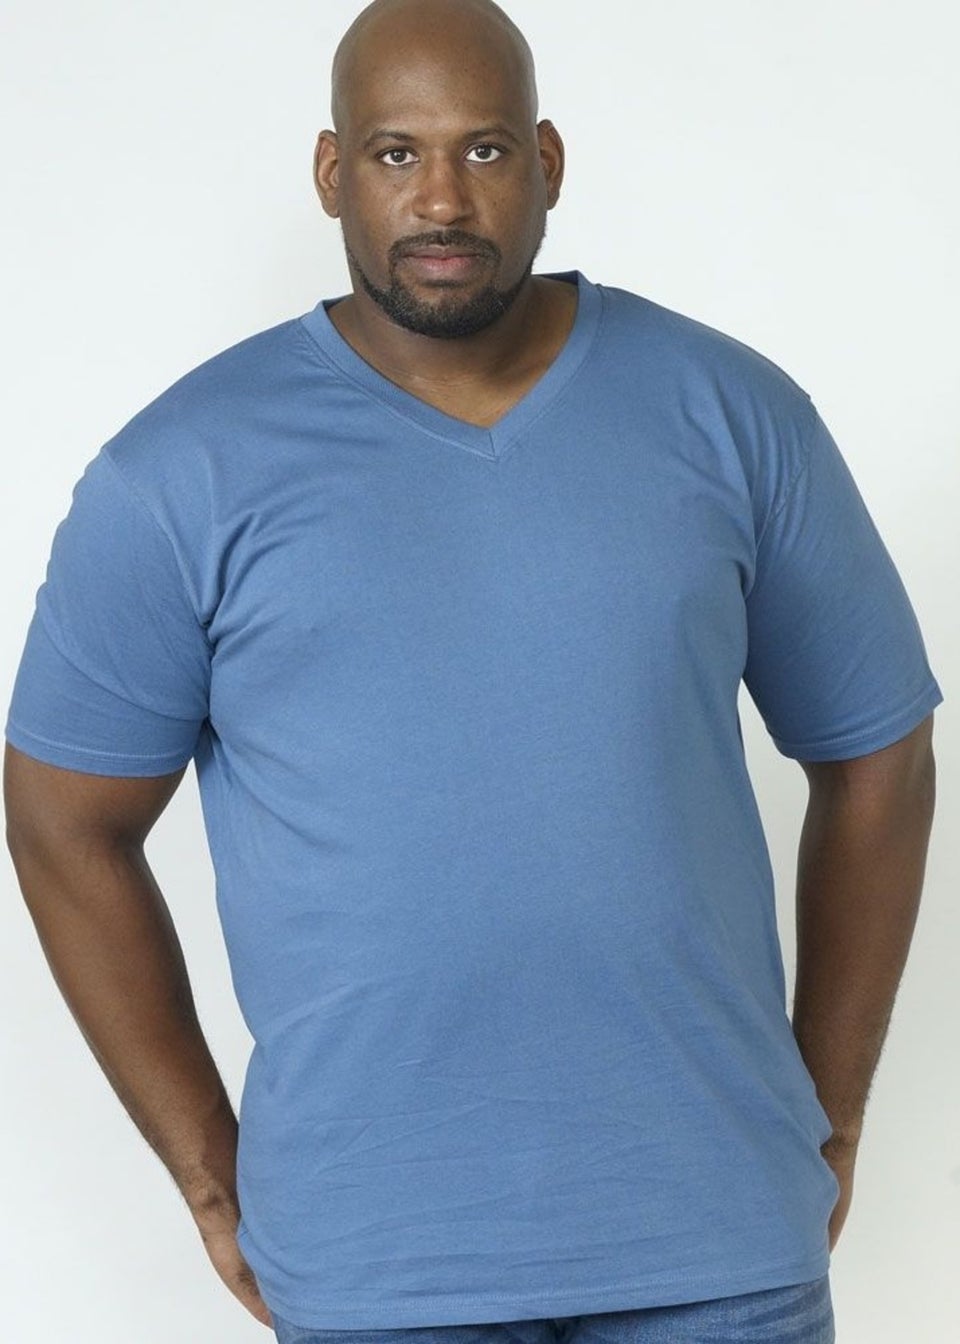 Duke Teal Signature 2 Kingsize Cotton V Neck T-Shirt